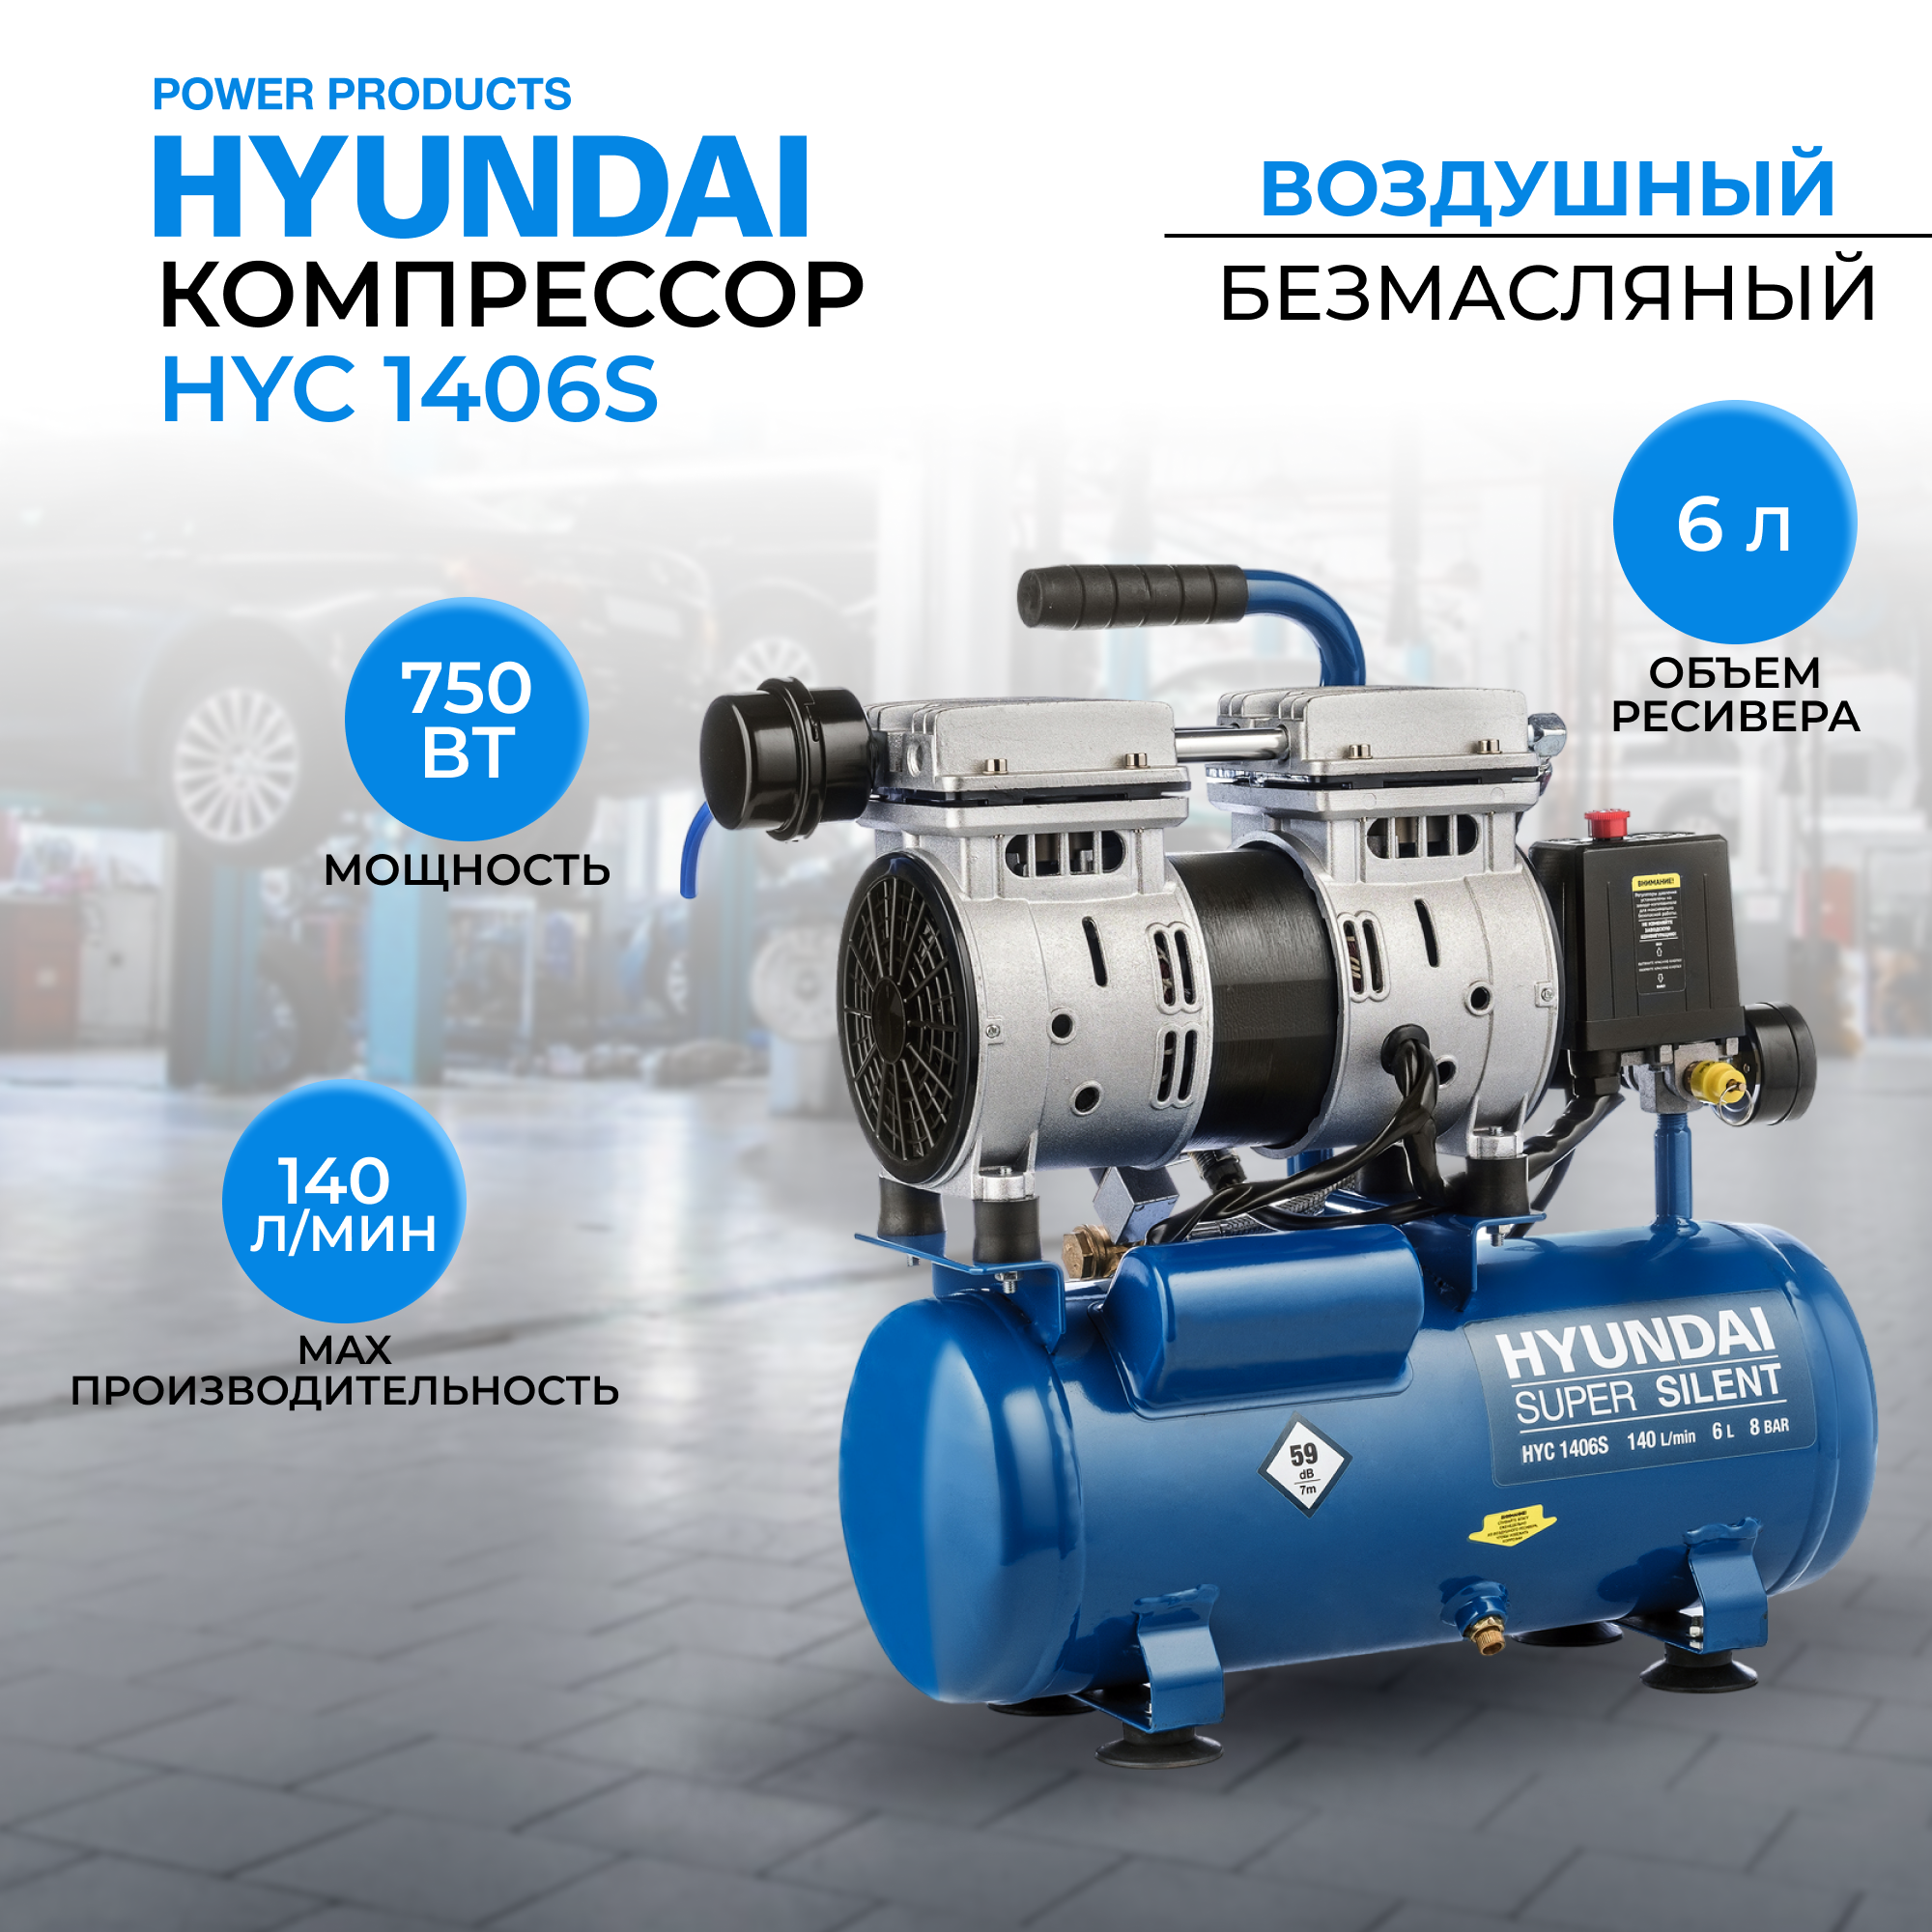 Воздушный поршневой компрессор Hyundai HYC 1406S безмасляный (140 л/мин, 750Вт, 8 бар) компрессор поршневой hyundai hyc 402100lms 100 л 400 л мин